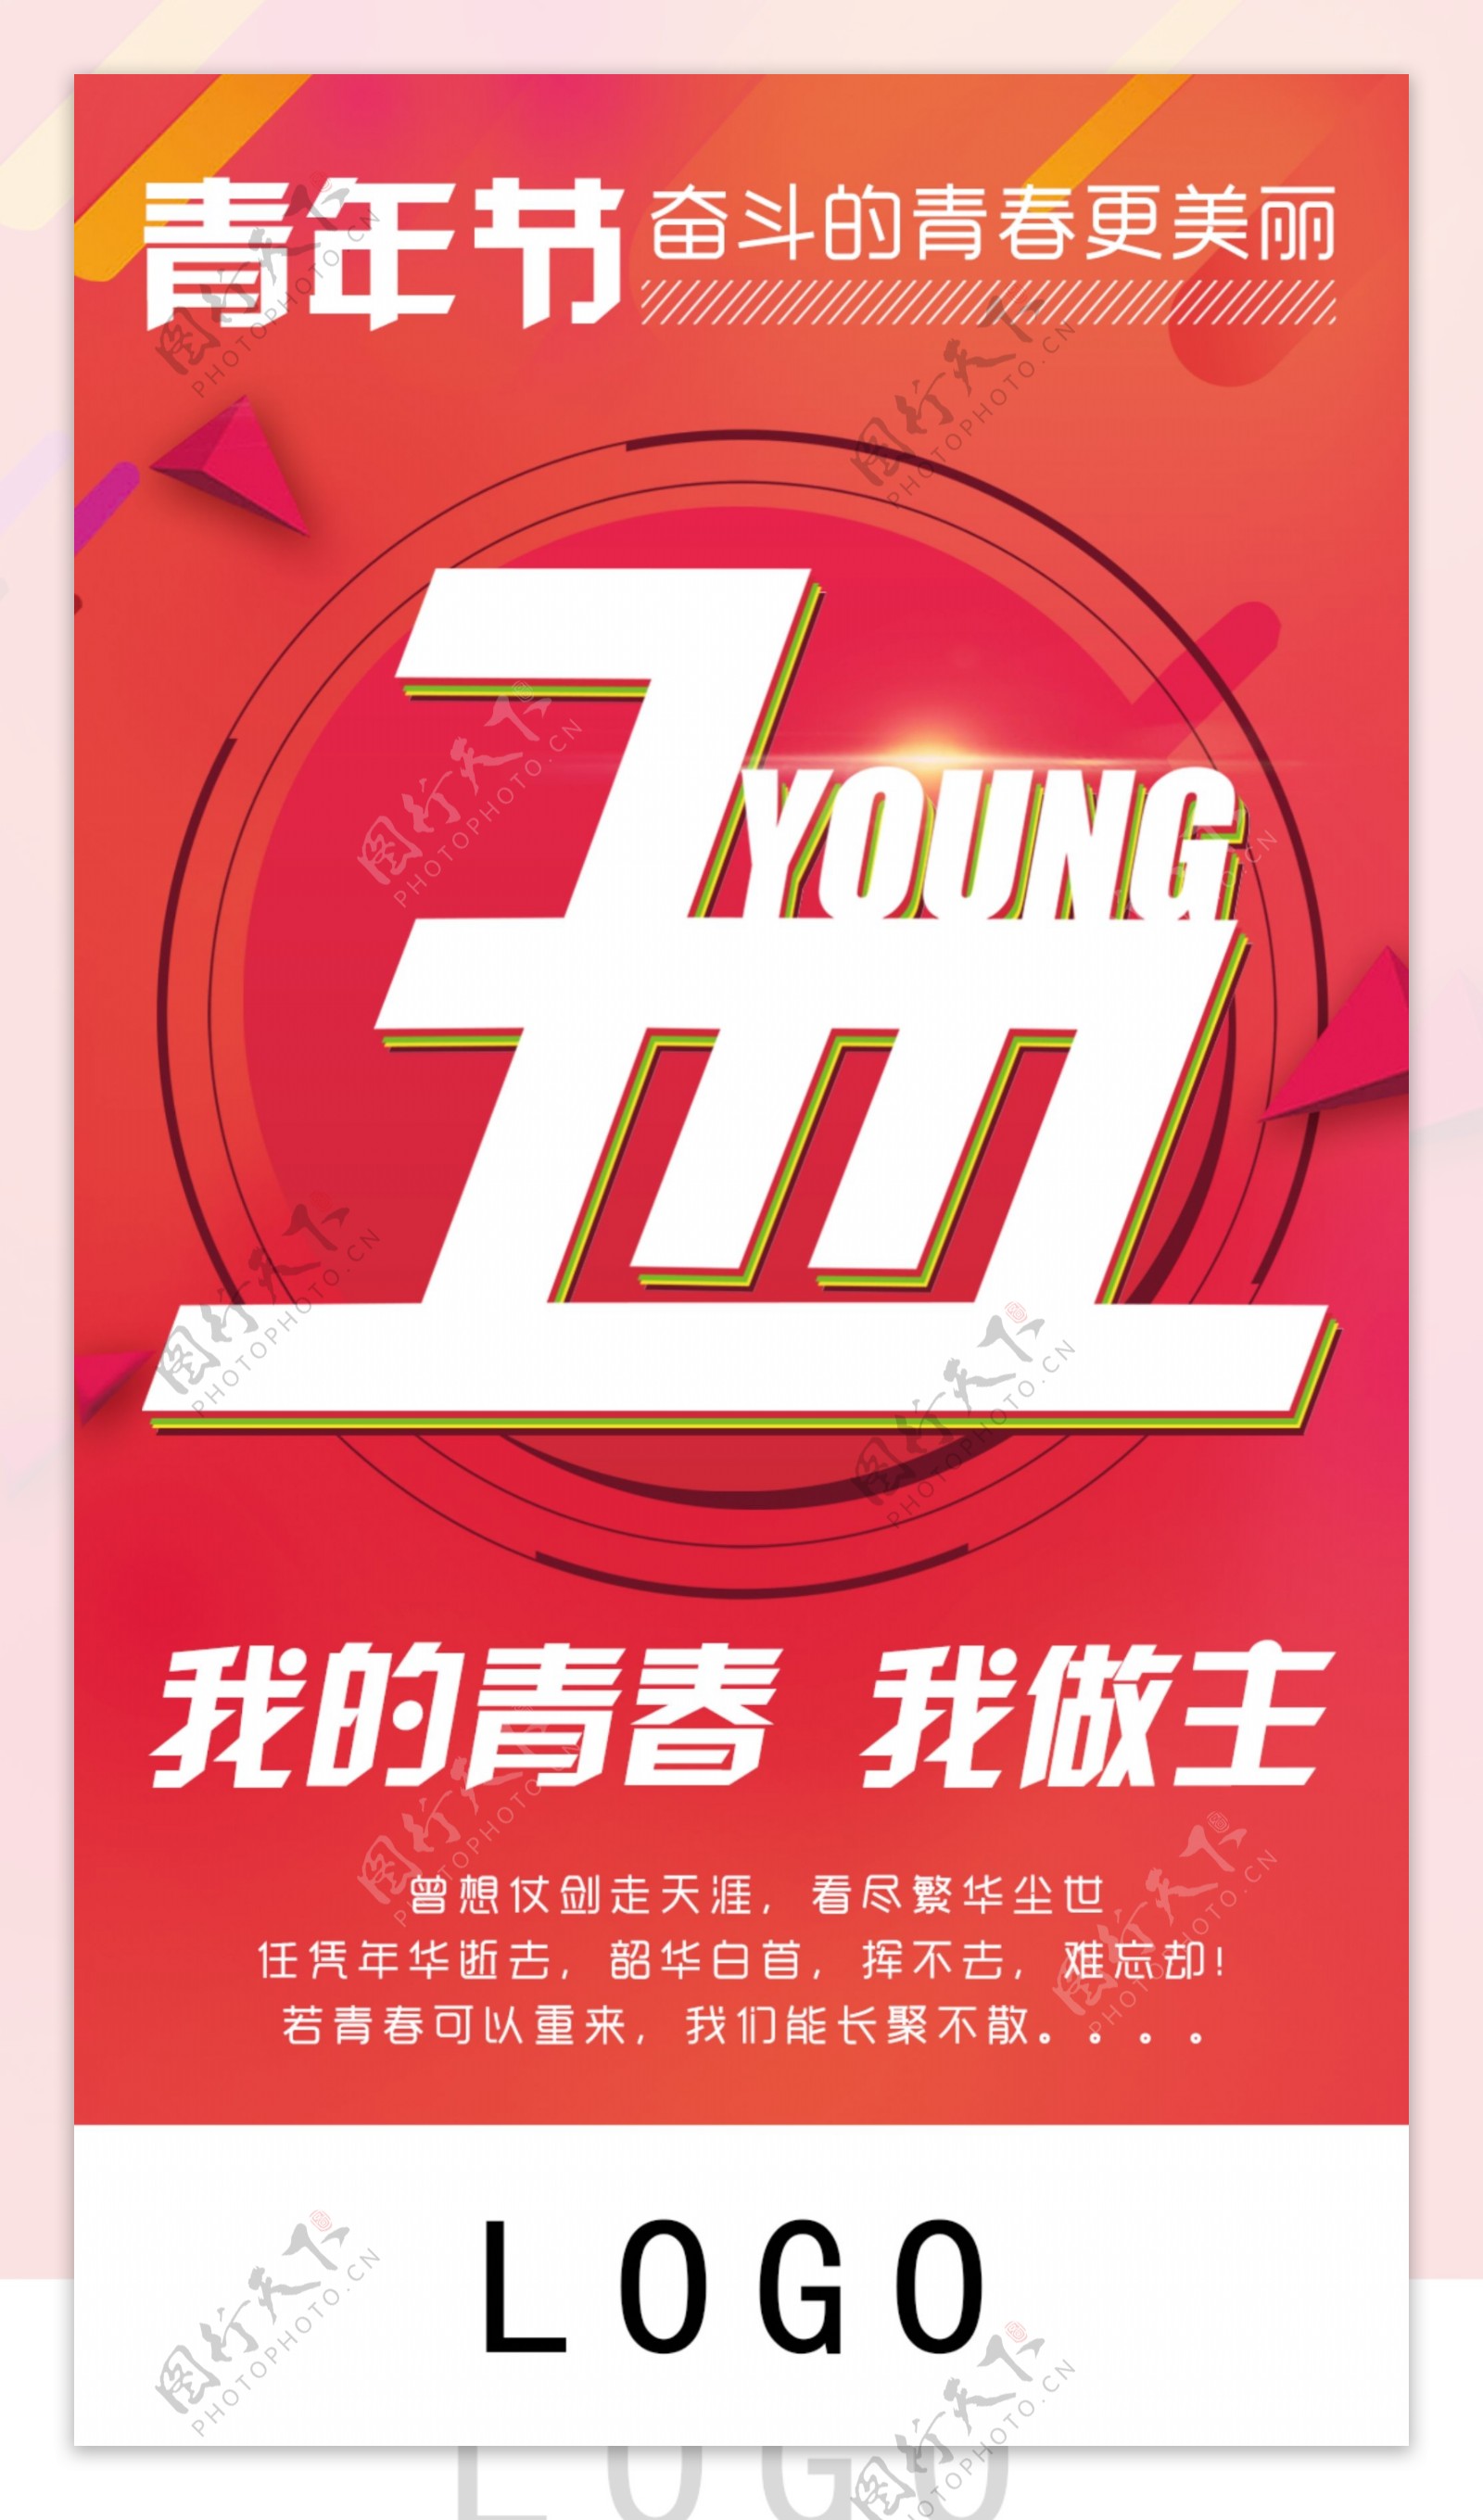 5.4青年节节日海报